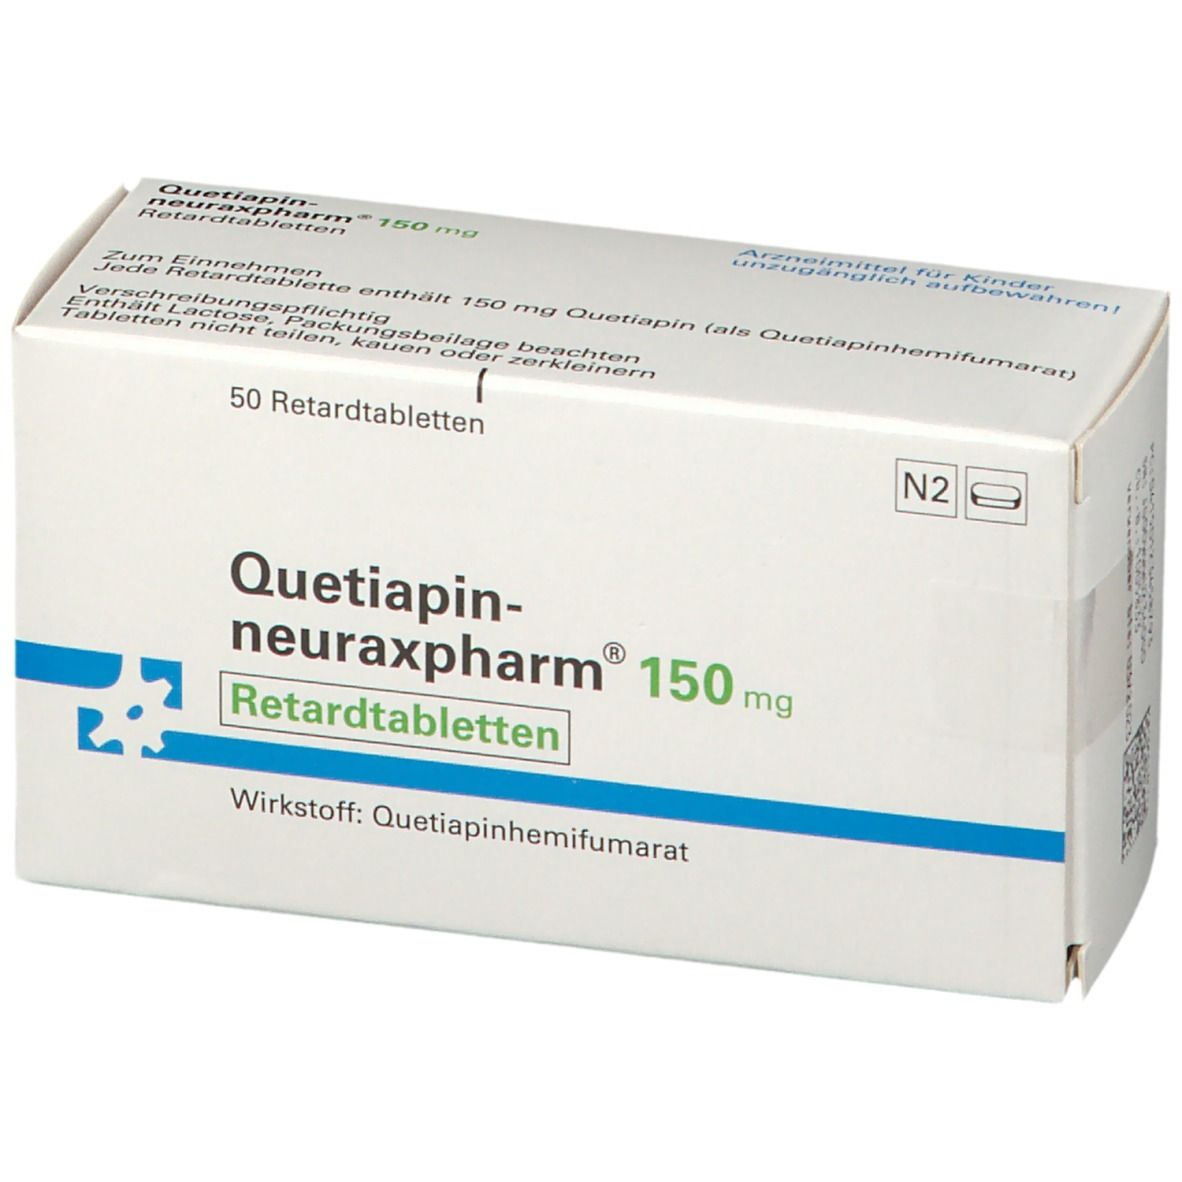 Quetiapin-neuraxpharm® 150 mg